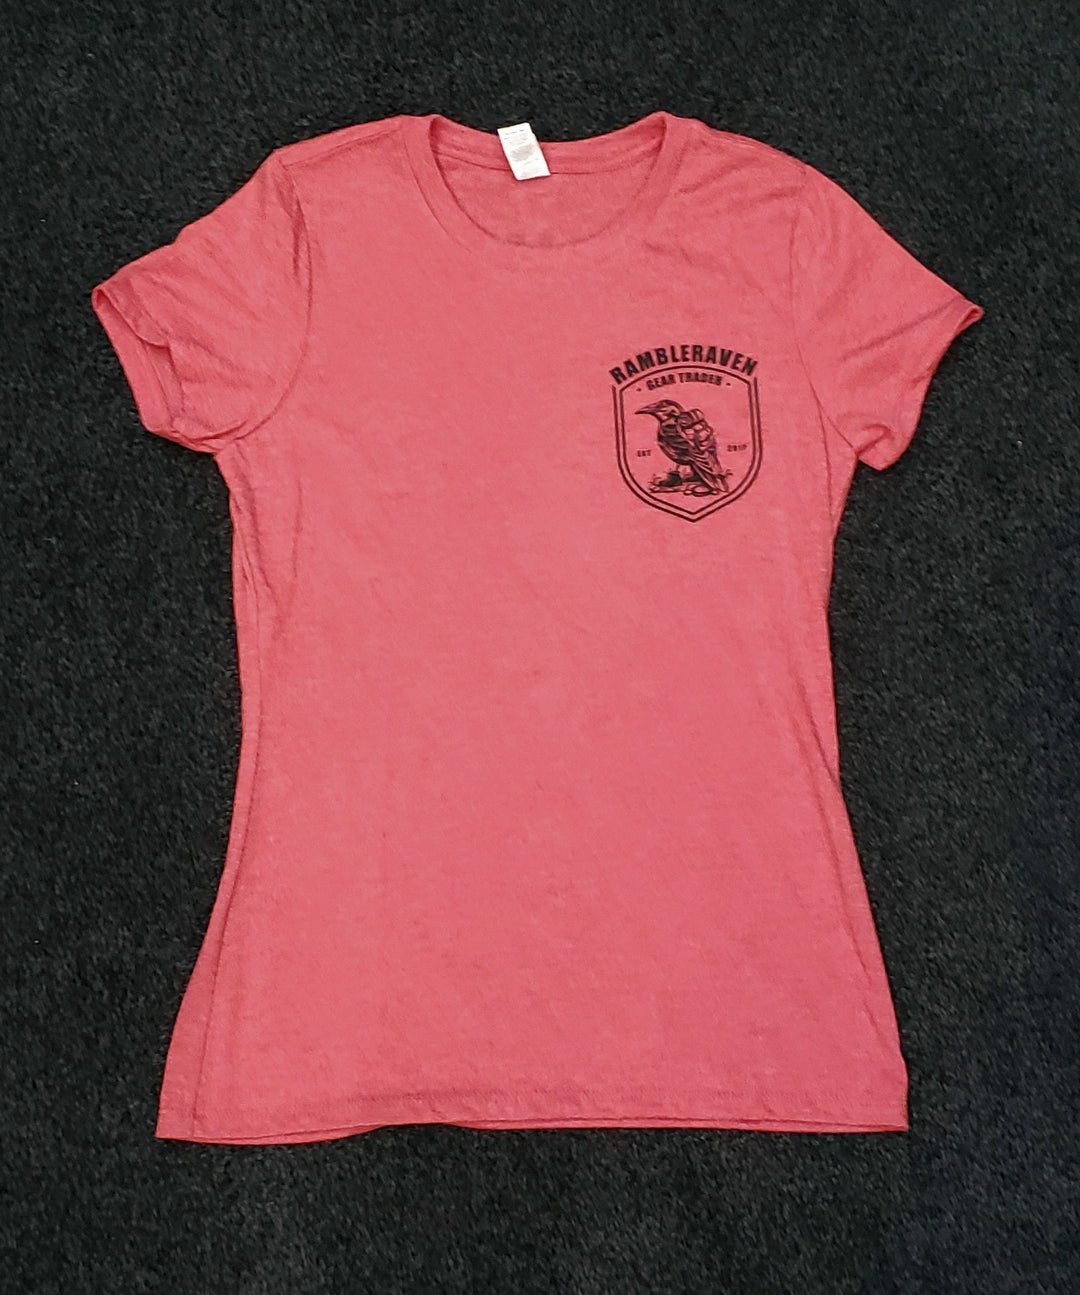 Rambleraven T-Shirt Women's